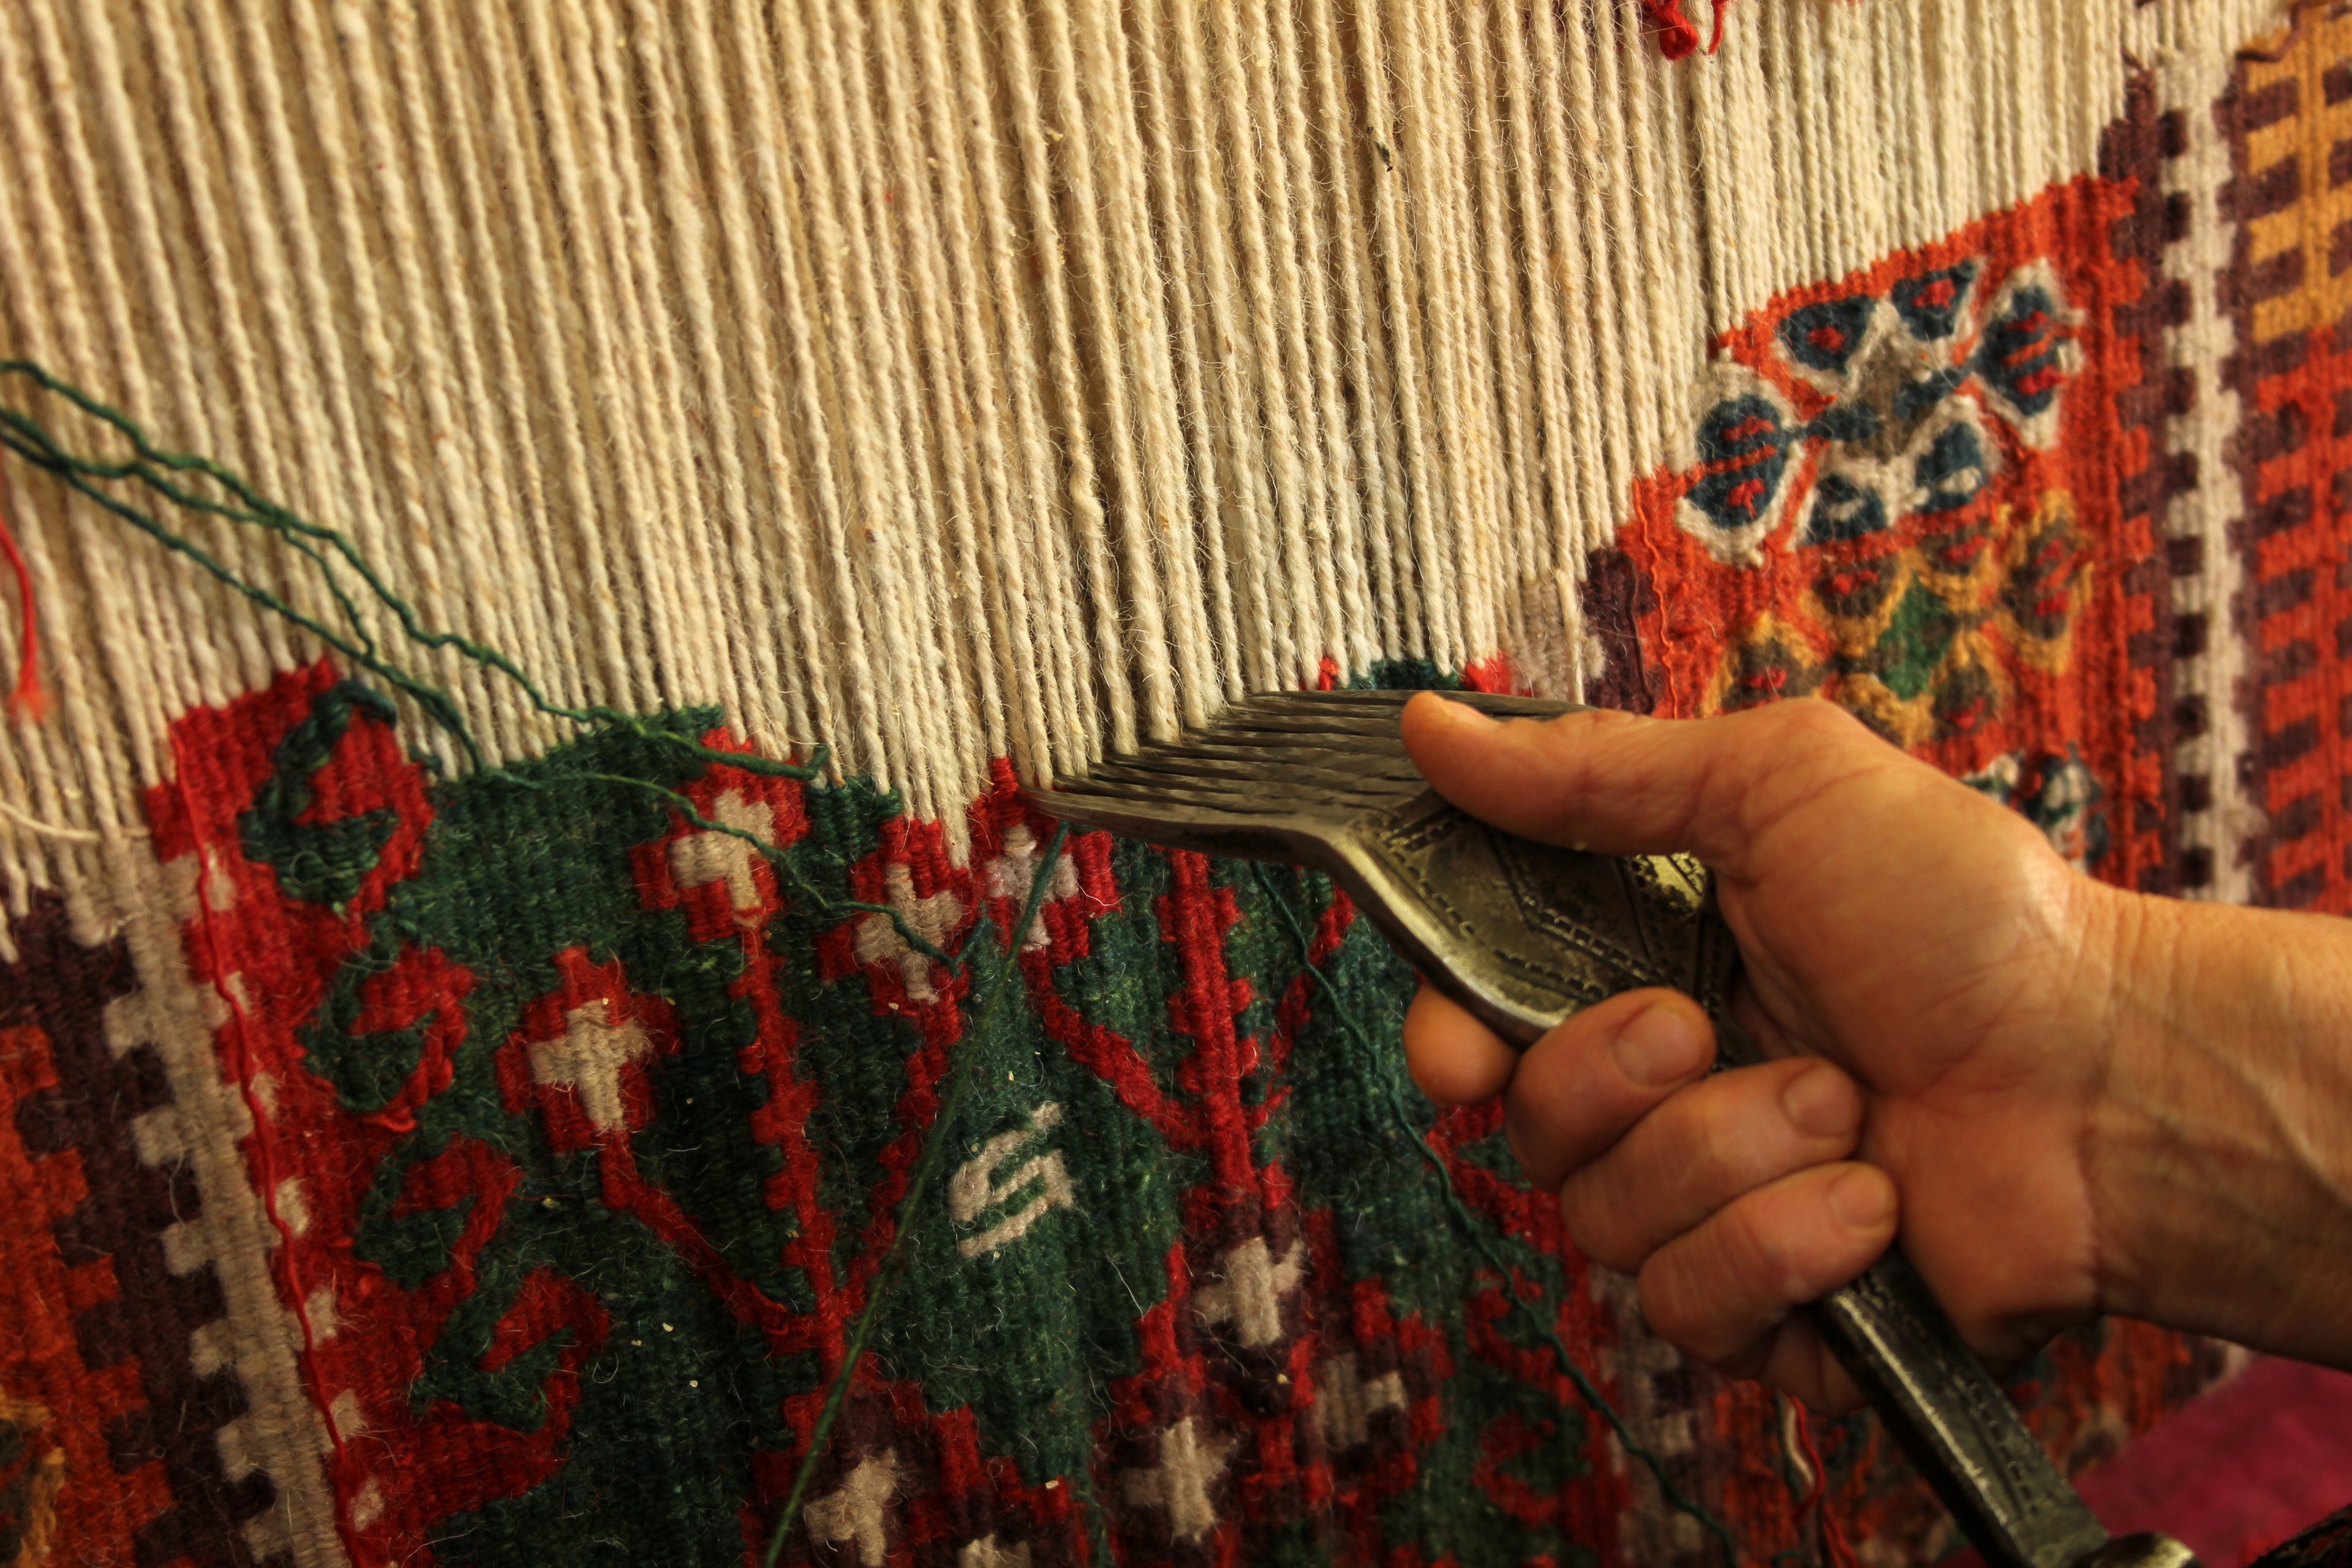 Handmade Rug Making Process, Turkish, Persian, Iranian Rugs and Kilims.